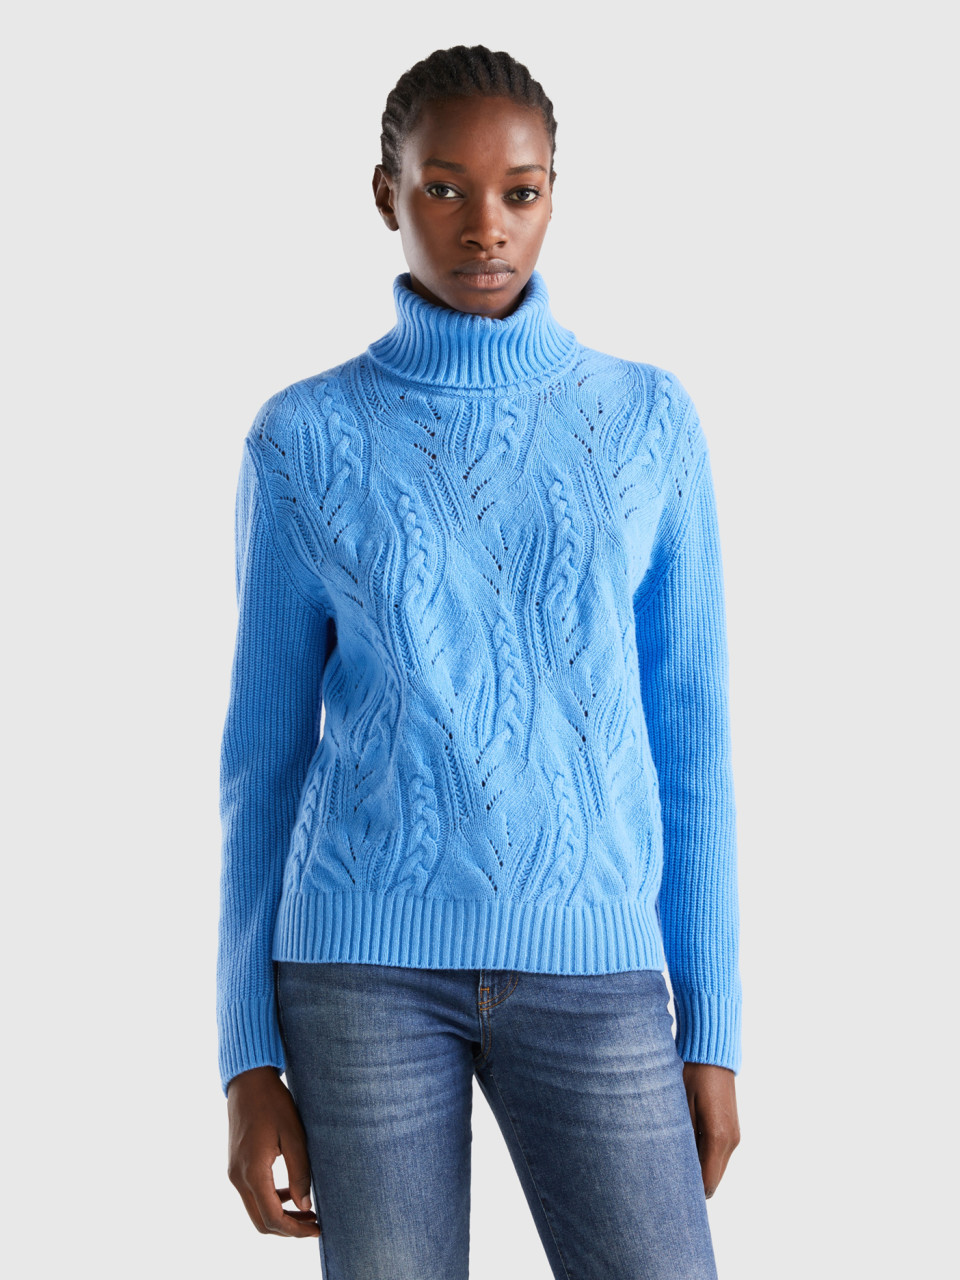 Benetton, Knit Turtle Neck Sweater, Light Blue, Women